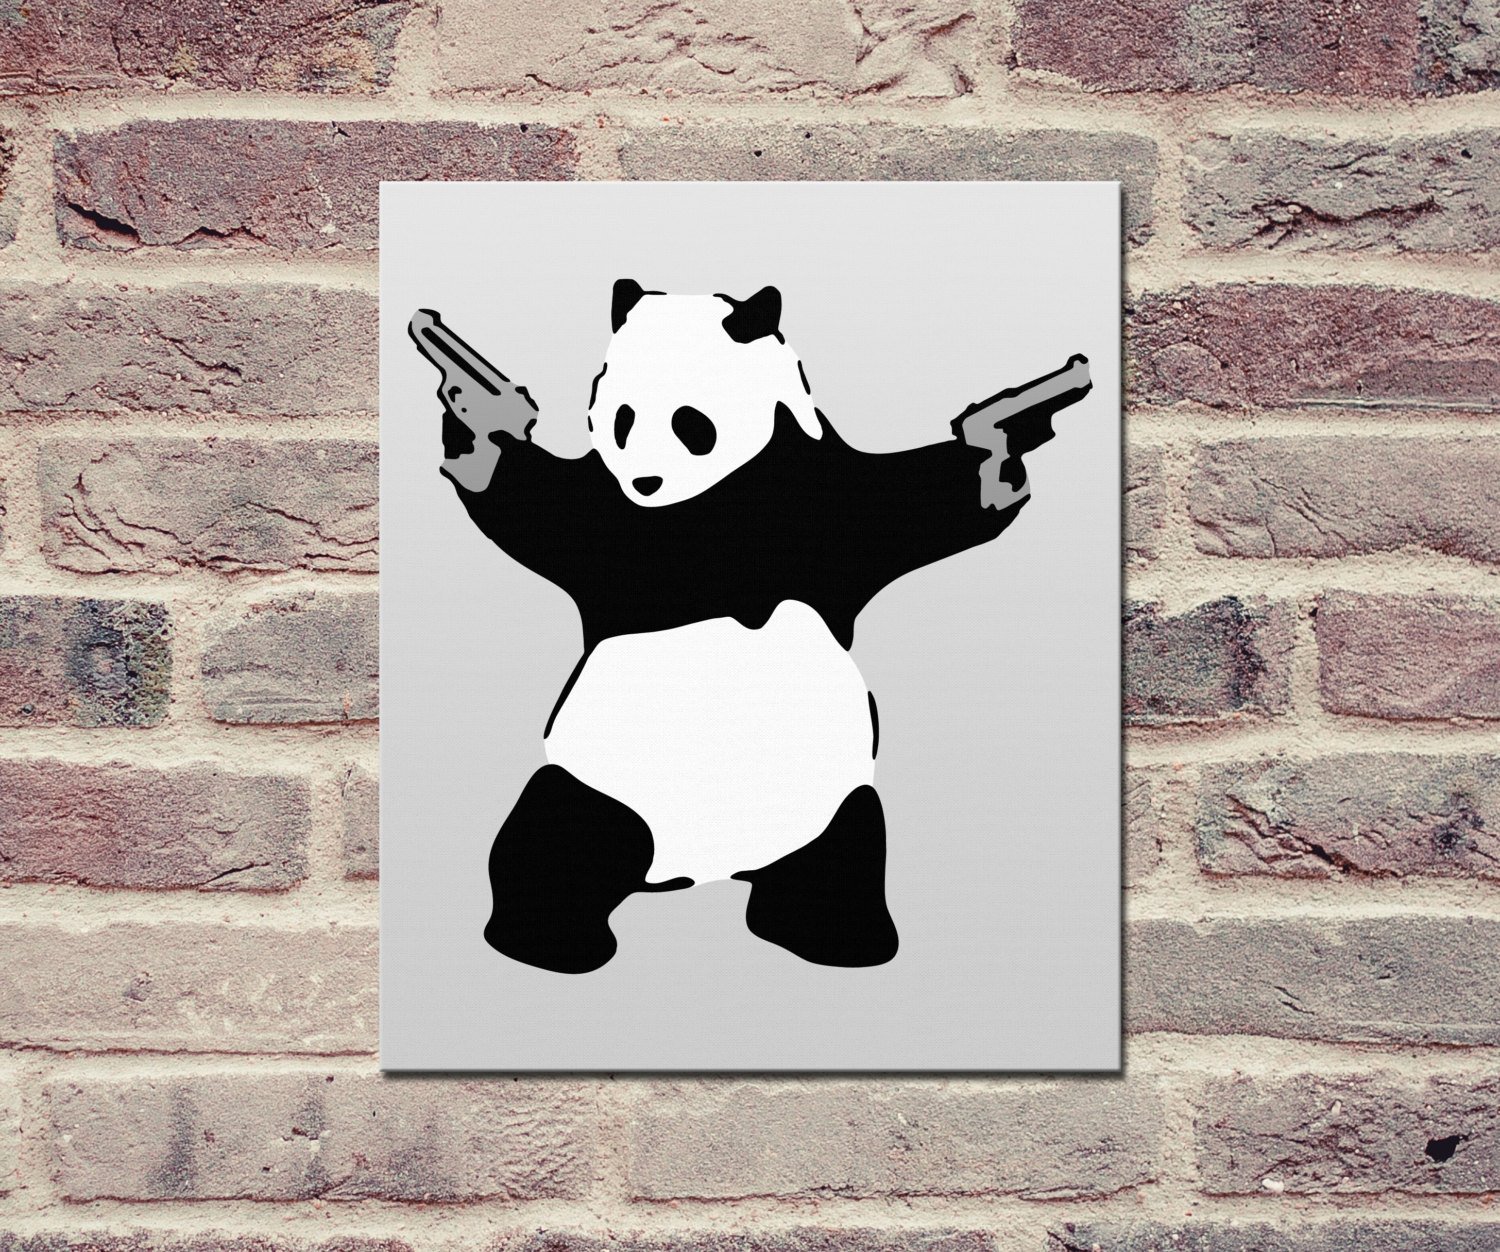 Banksy, Panda with Guns - Canvas Wrap Print